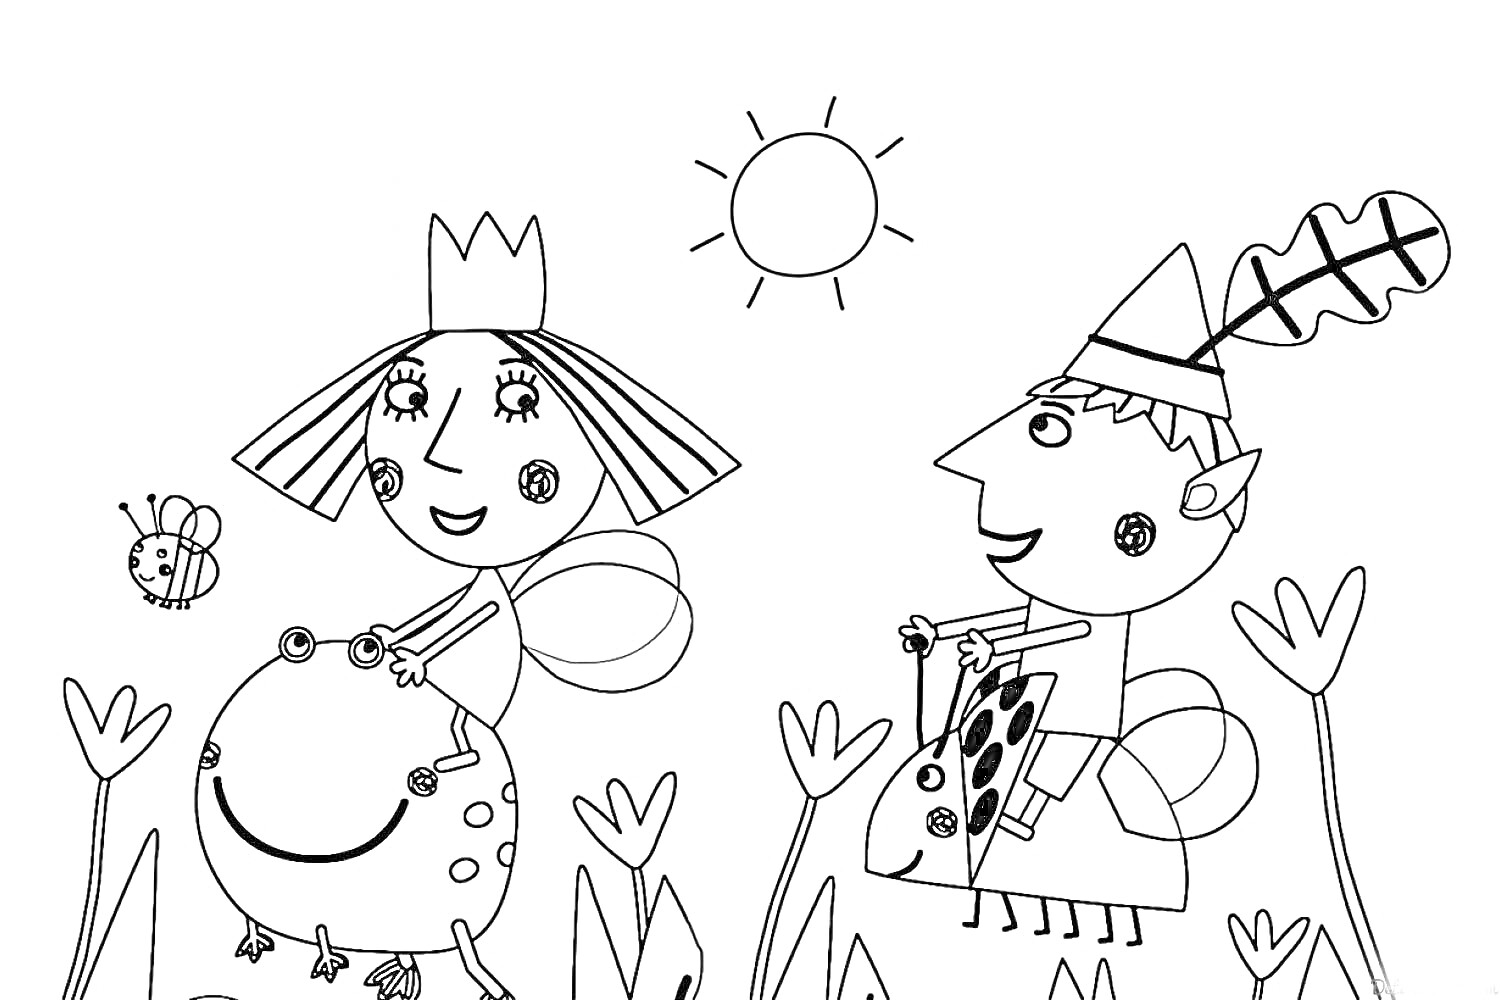 Девочка с короной верхом на лягушке, мальчик в колпаке верхом на божьей коровке, солнышко, бабочка, растения